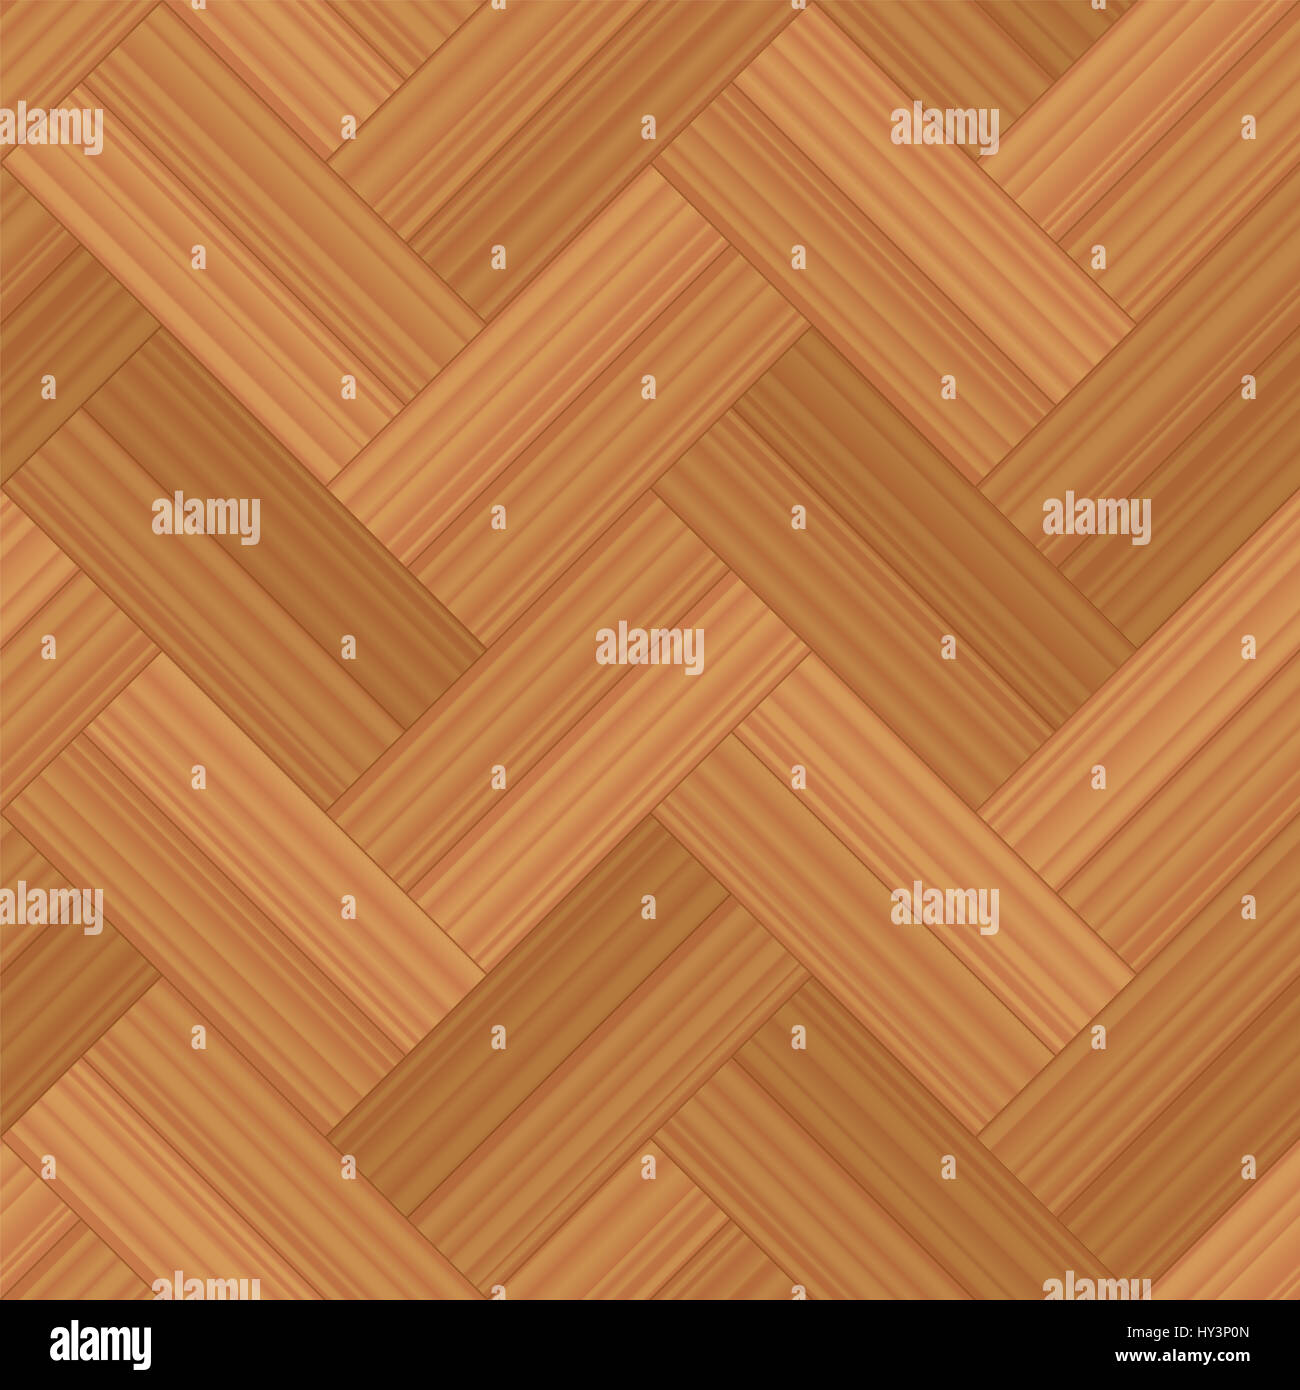 Parquet a spina di pesce a fila doppia - illustrazione di un tipico pavimento in legno del modello - seamless estensibile in tutte le direzioni. Foto Stock